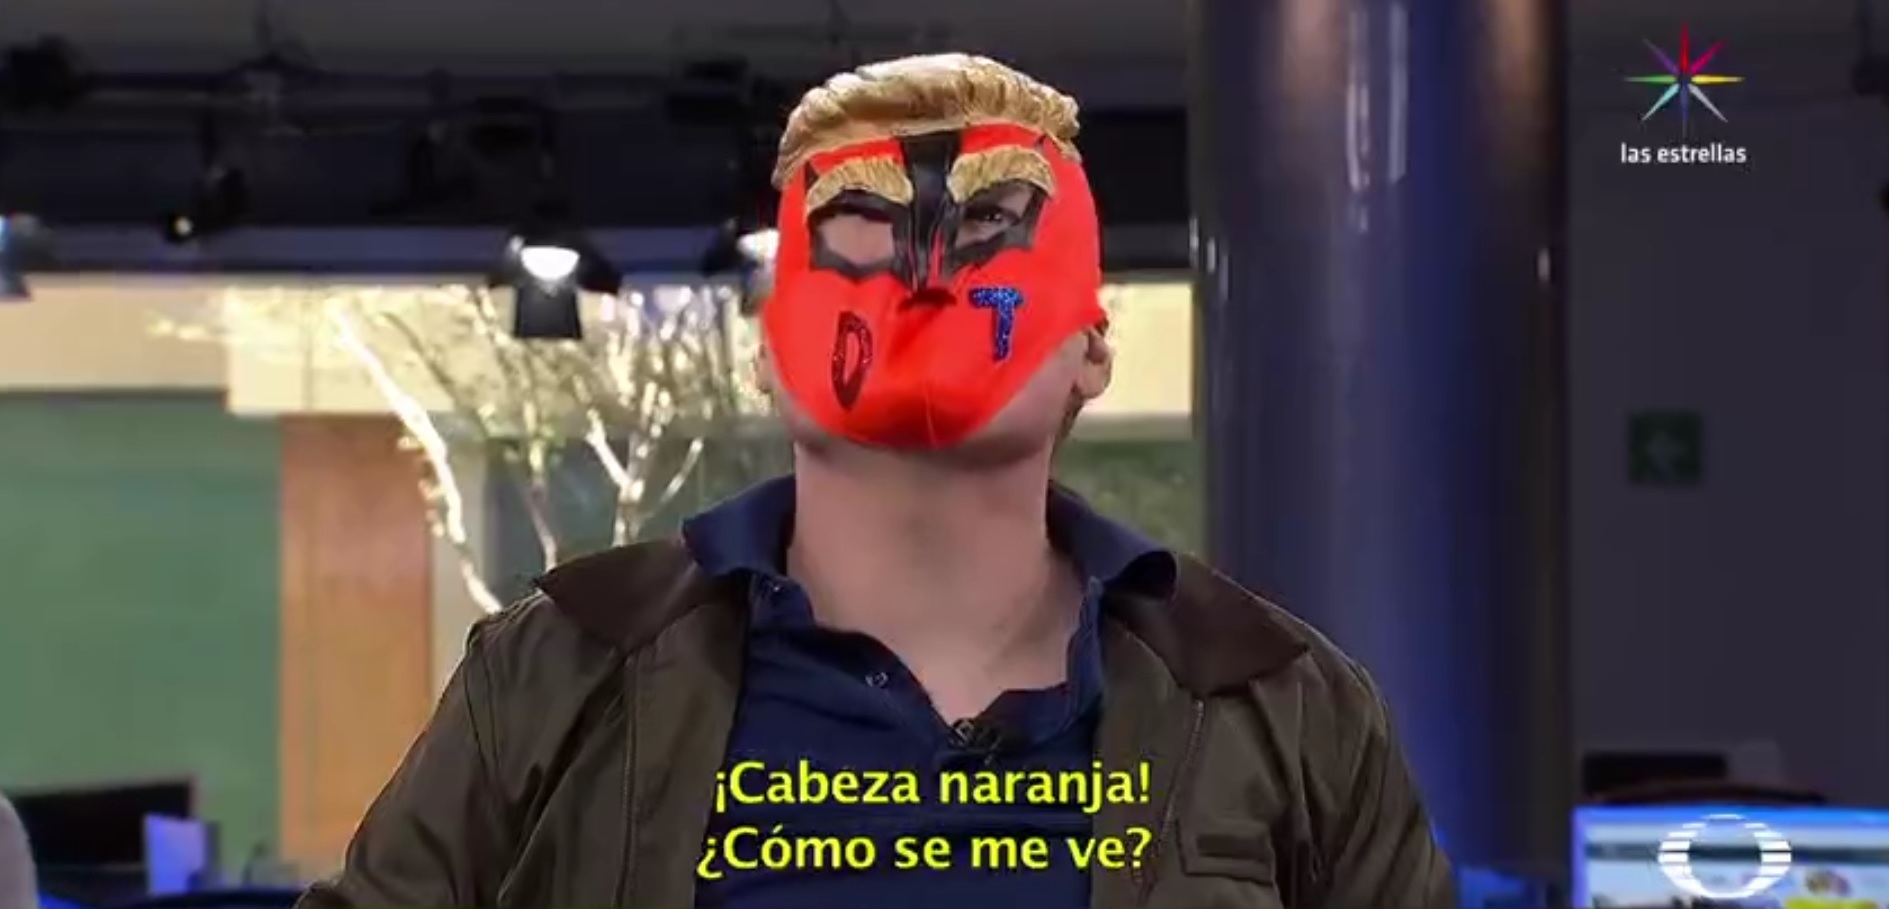 Máscara de luchador con peluca de Donald Trump adaptada (Noticieros Televisa)